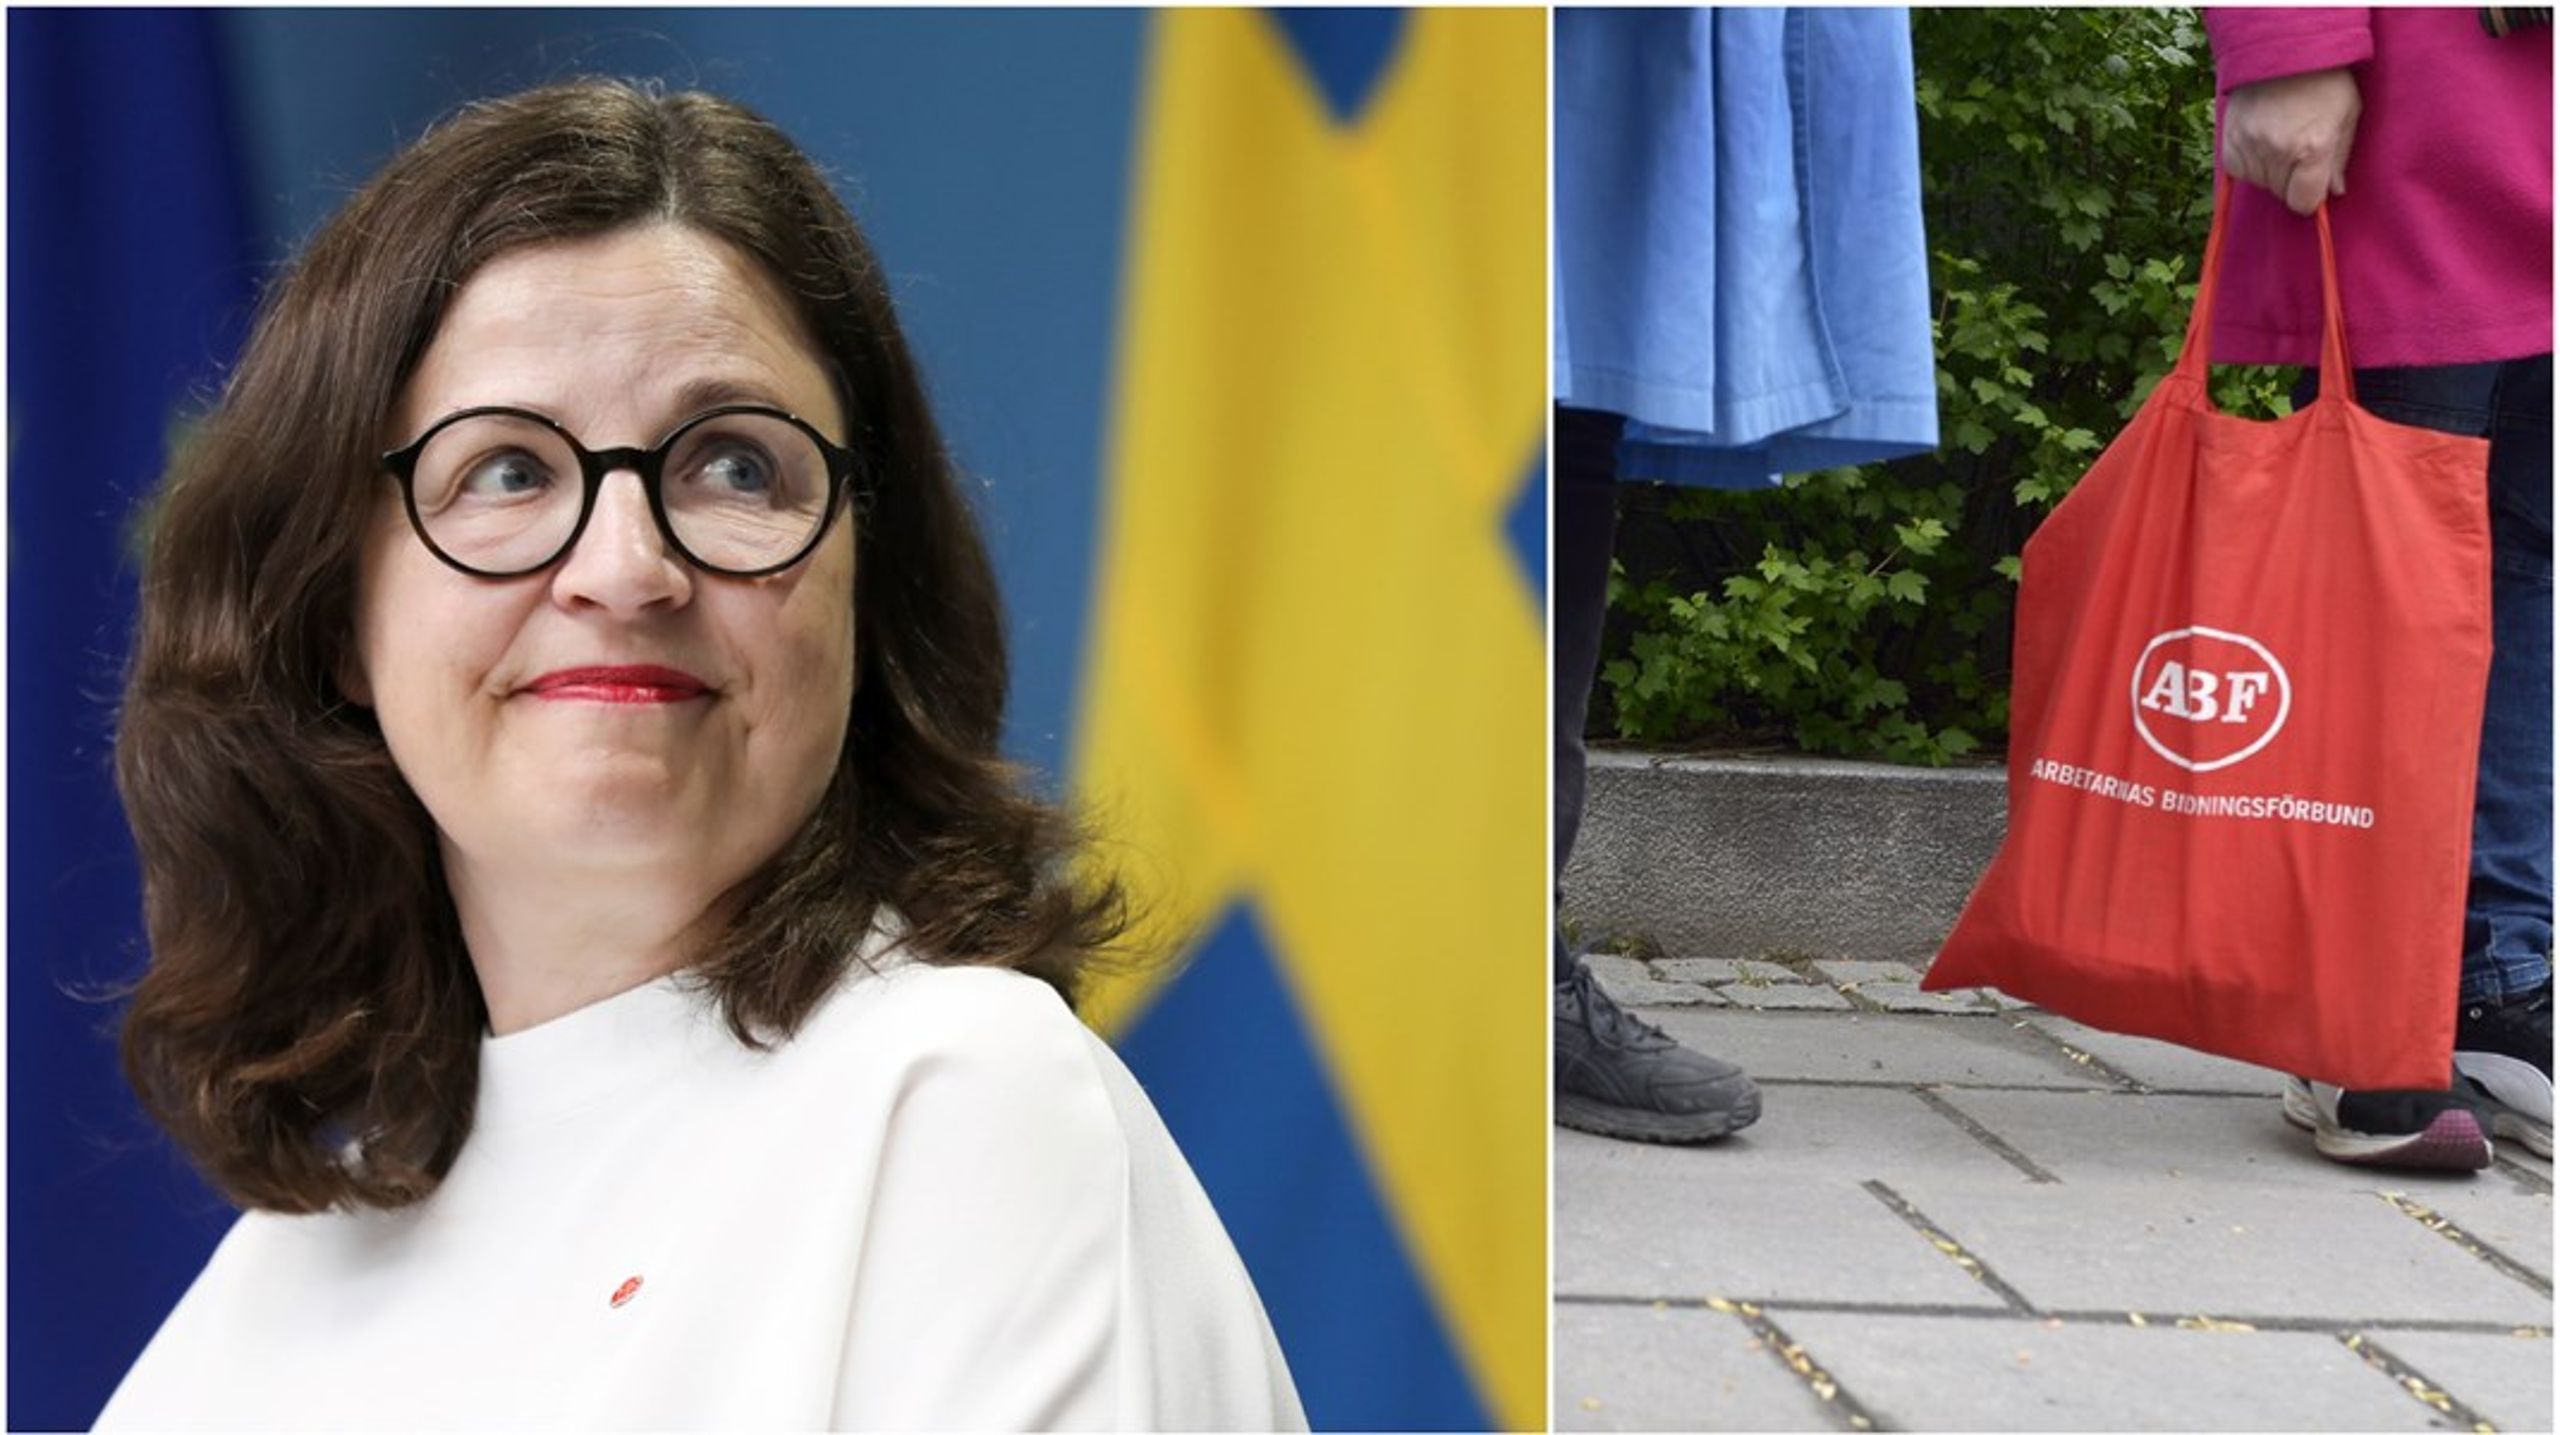 ABF ska vara Stockholms självklara mötesplats där elever från olika bakgrunder möts och där argumenten spelar roll. Inte vem som säger vad. Det säger&nbsp;Anna Ekström (S) som var minister mellan 2016 och 2022.